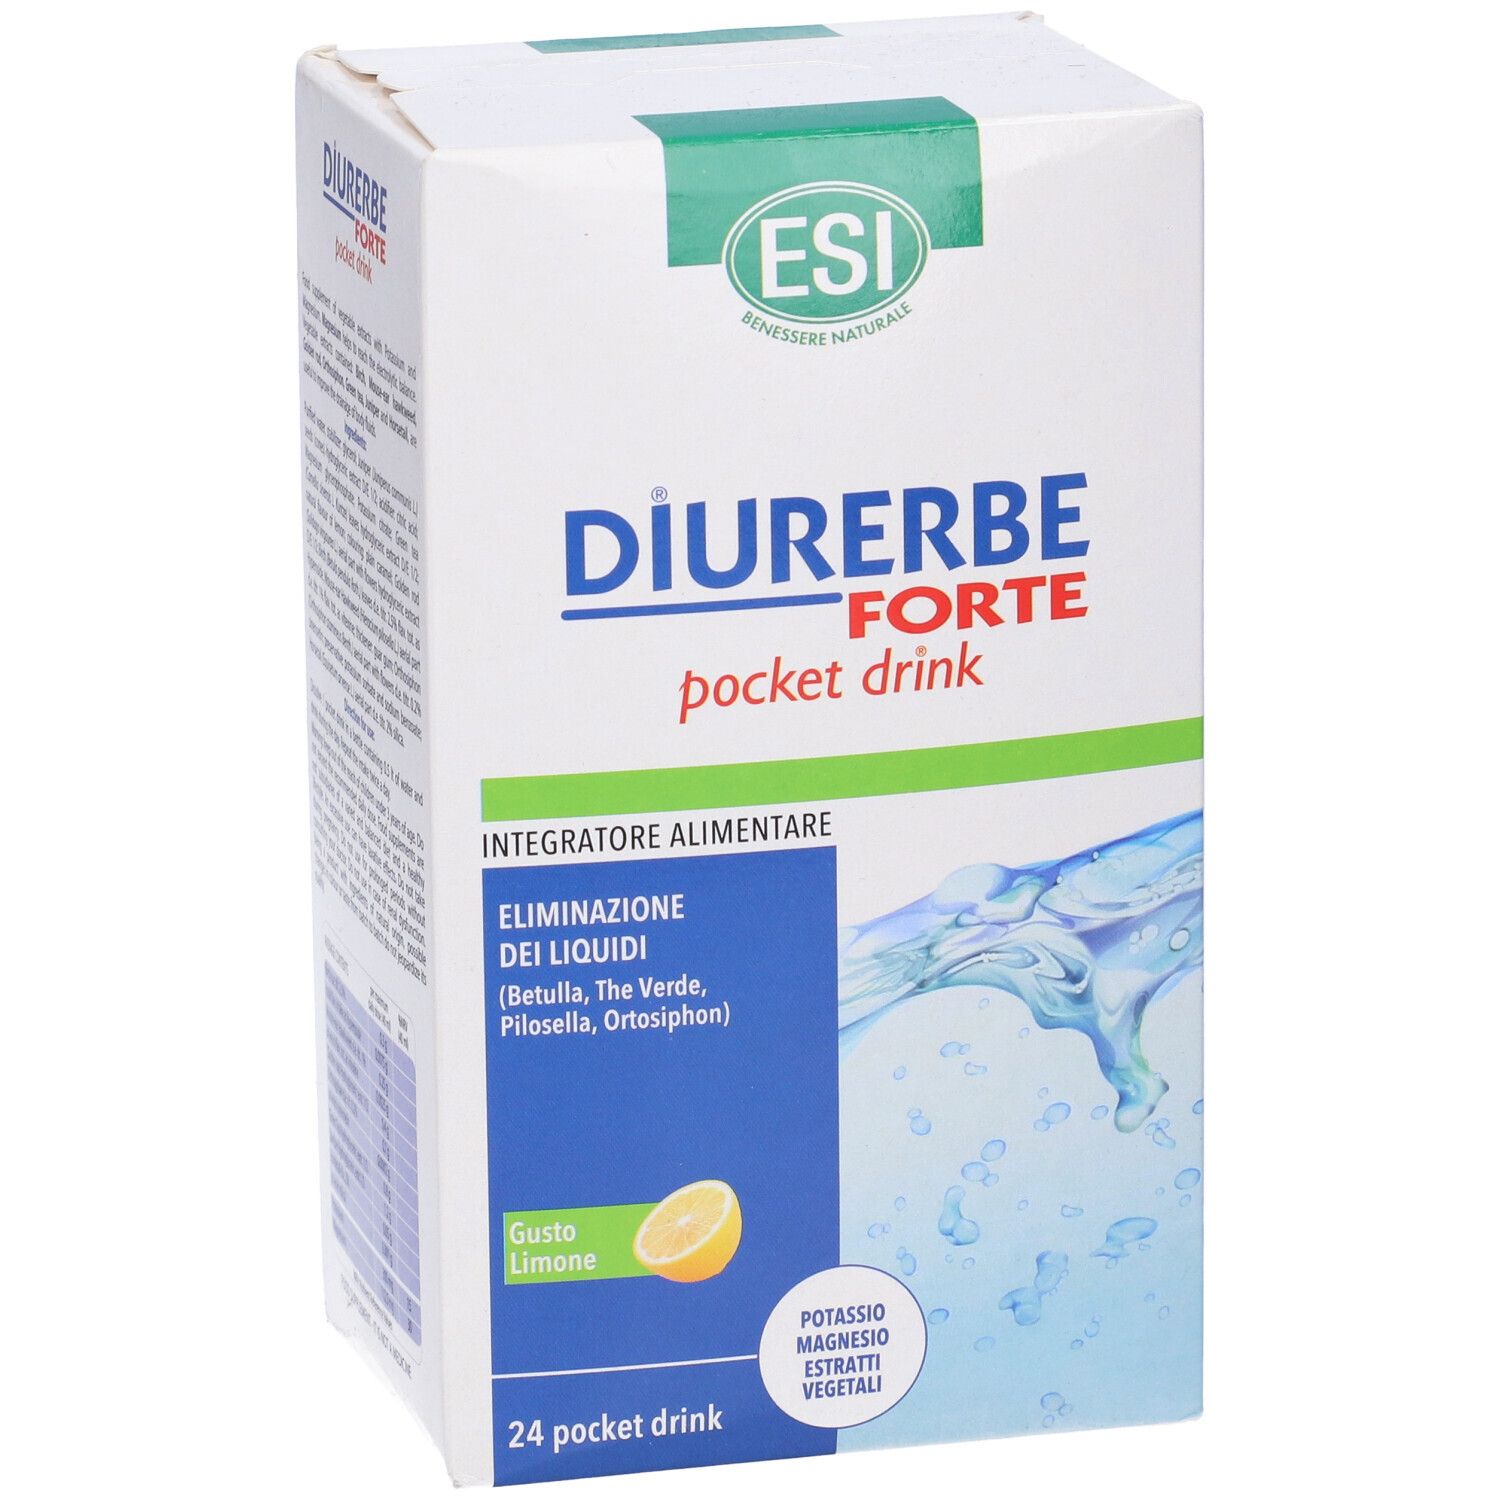 DIURERBE® Forte Pocket drink